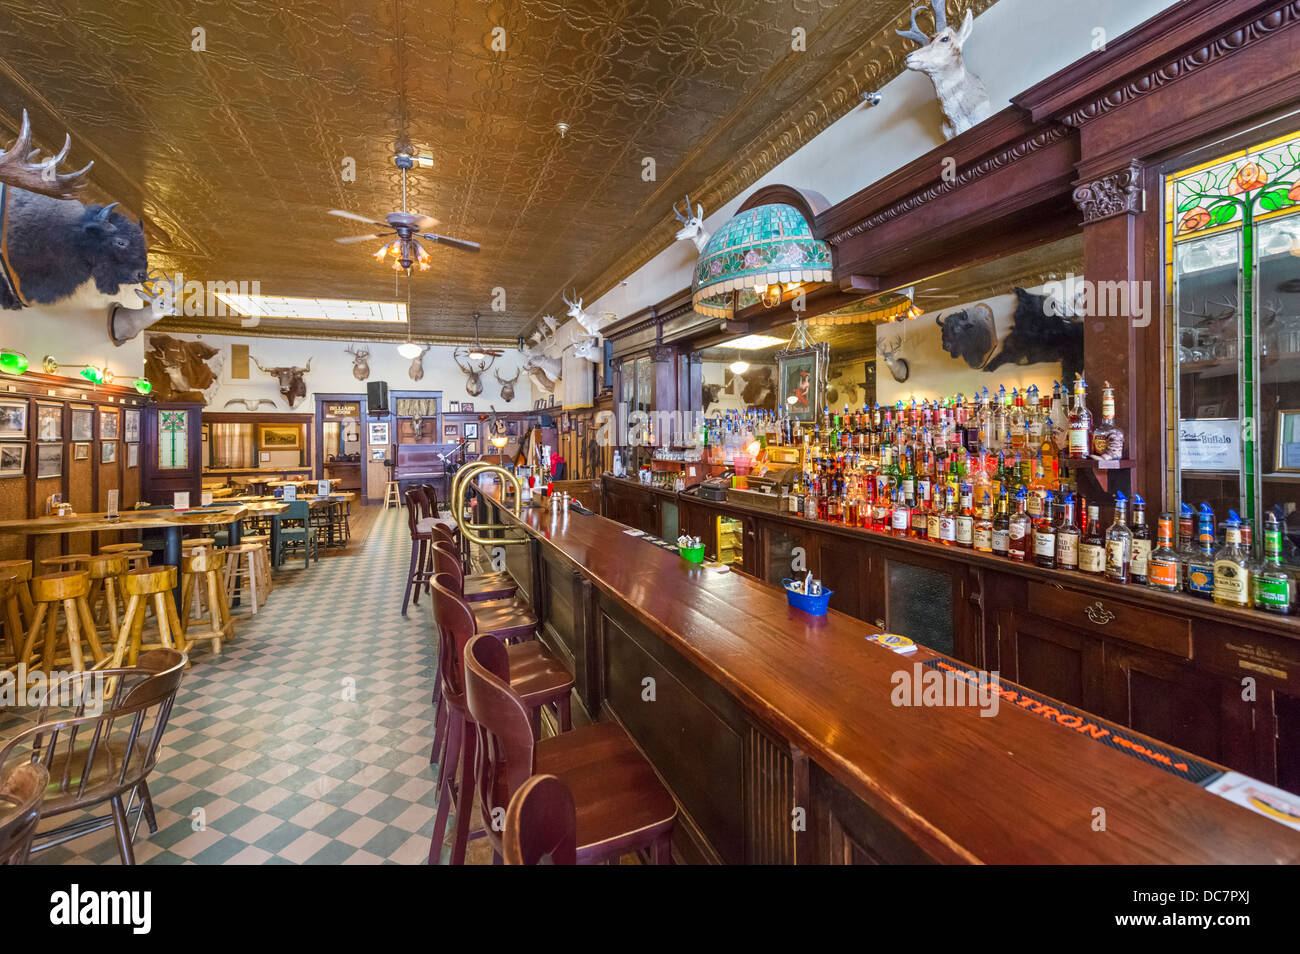 El salón bar del histórico Hotel Occidental, calle principal de Buffalo, Wyoming, EE.UU. Foto de stock